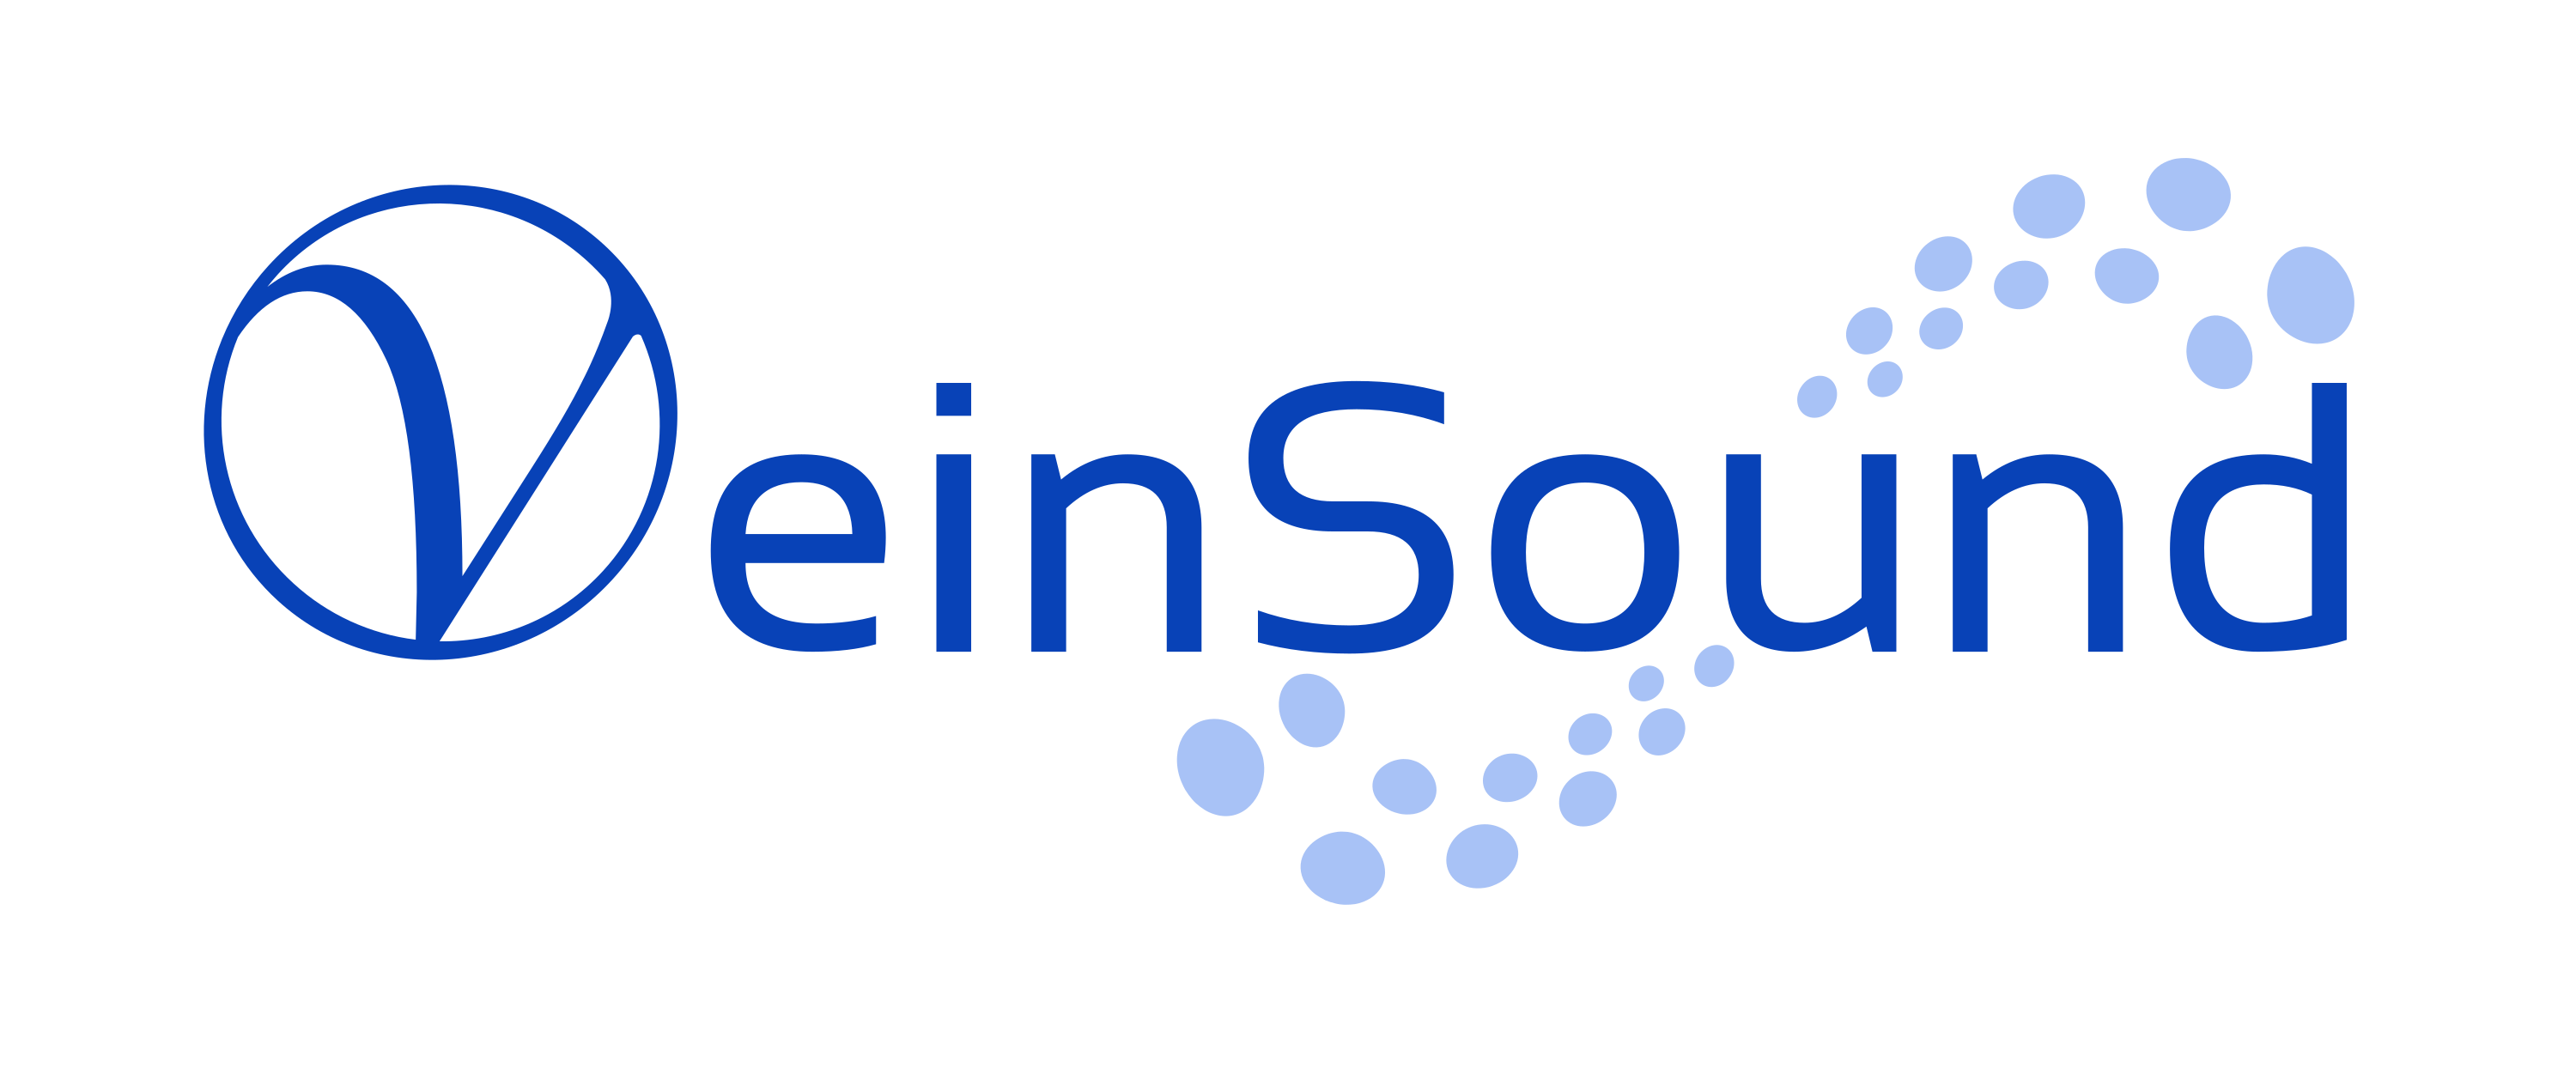 VeinSound logo 2021